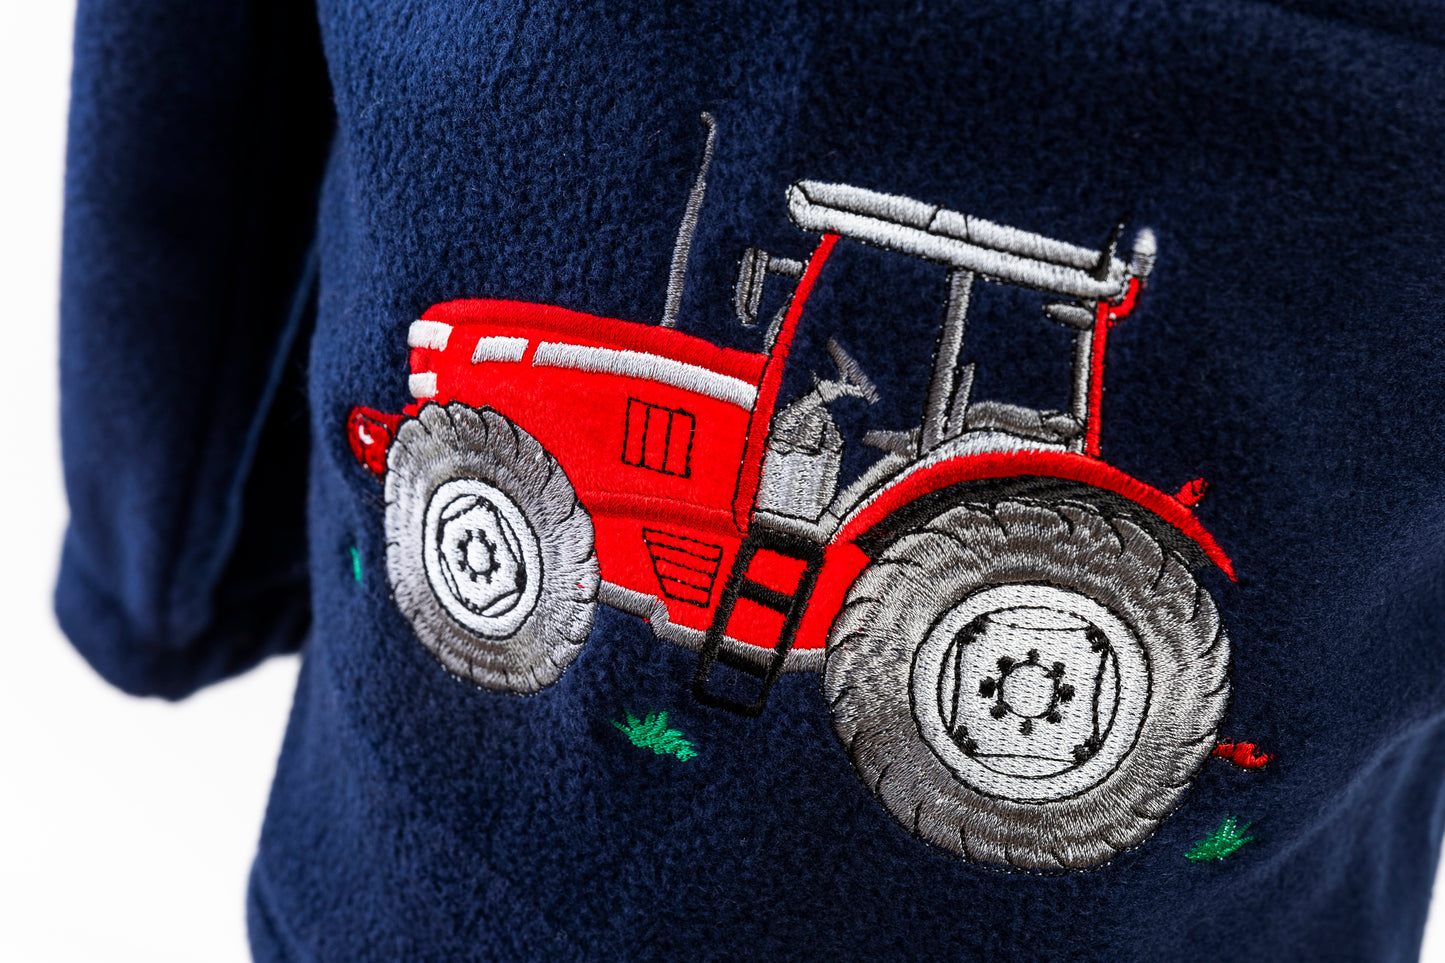 Kids 1/2 Zip Fleece - Red Tractor